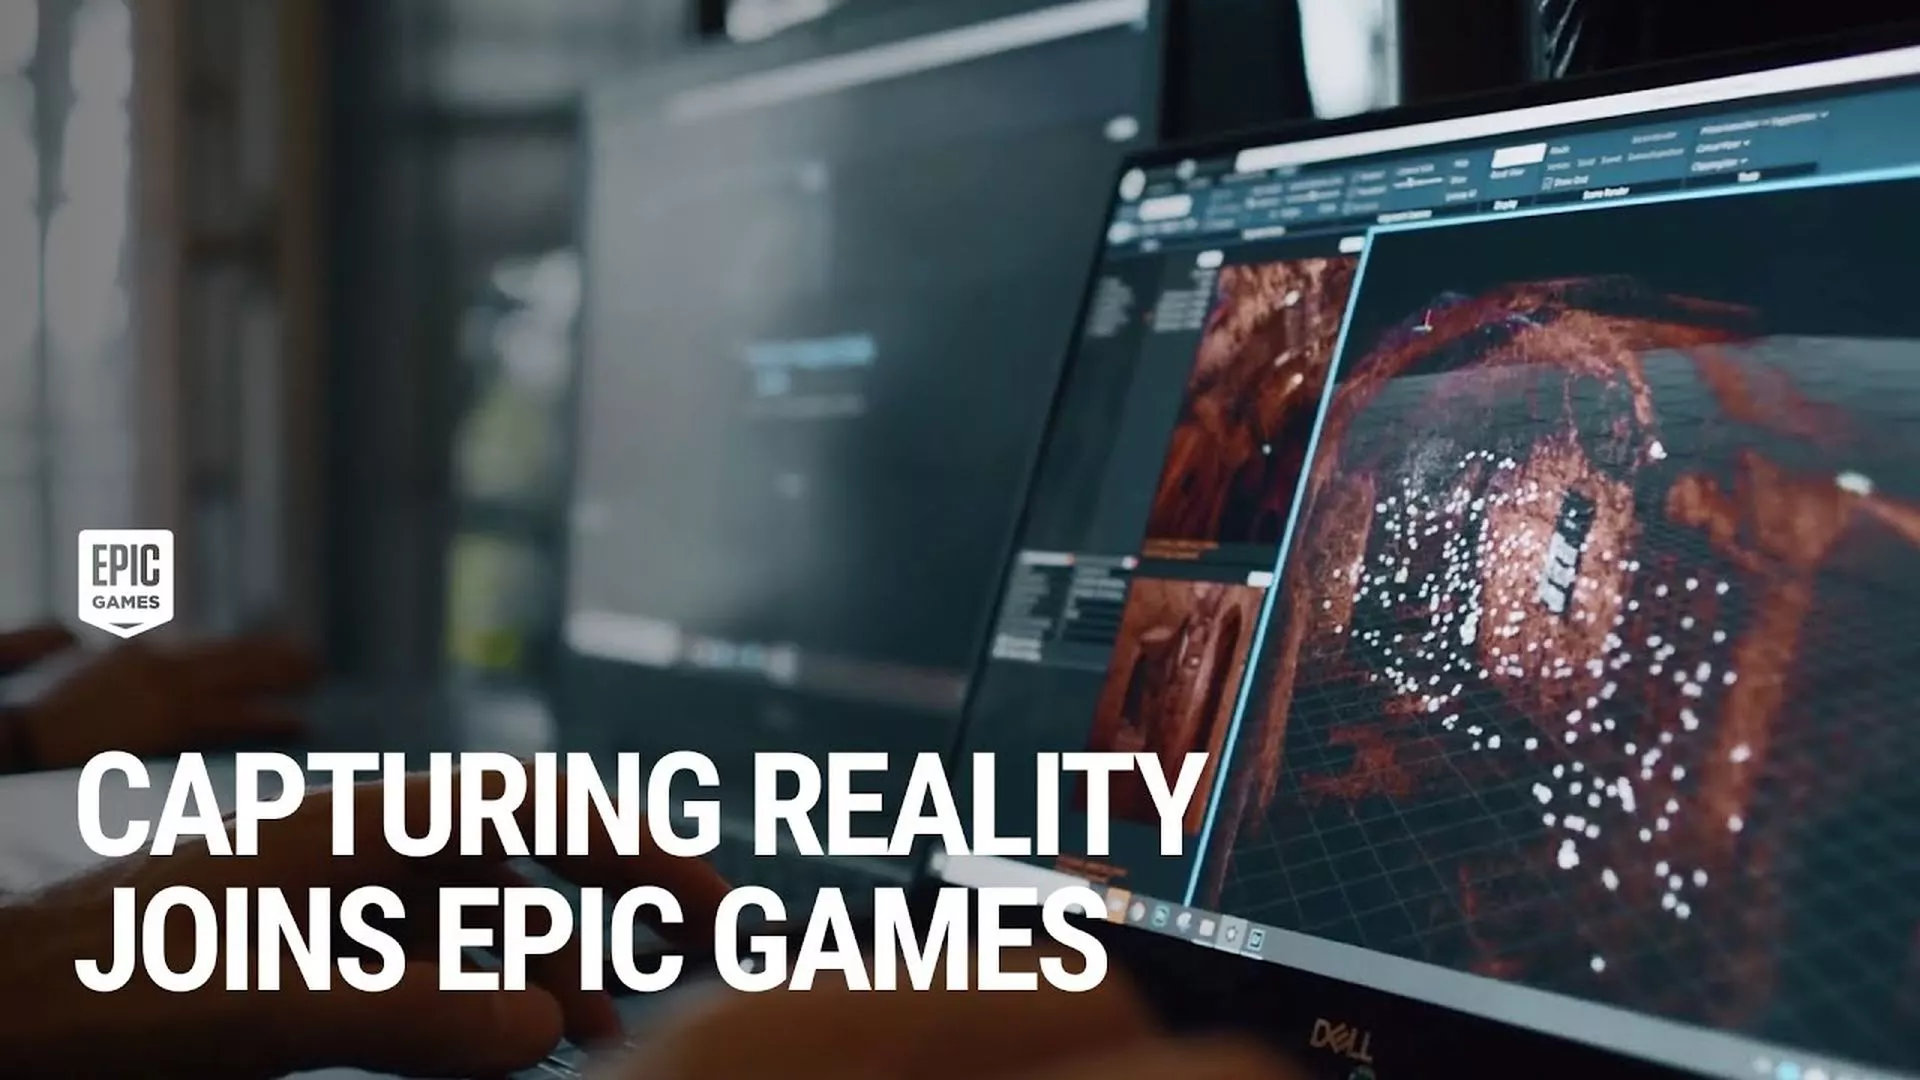 RealityScan de Epic Games llega a la Play Store para crear modelos 3D a partir de fotografías